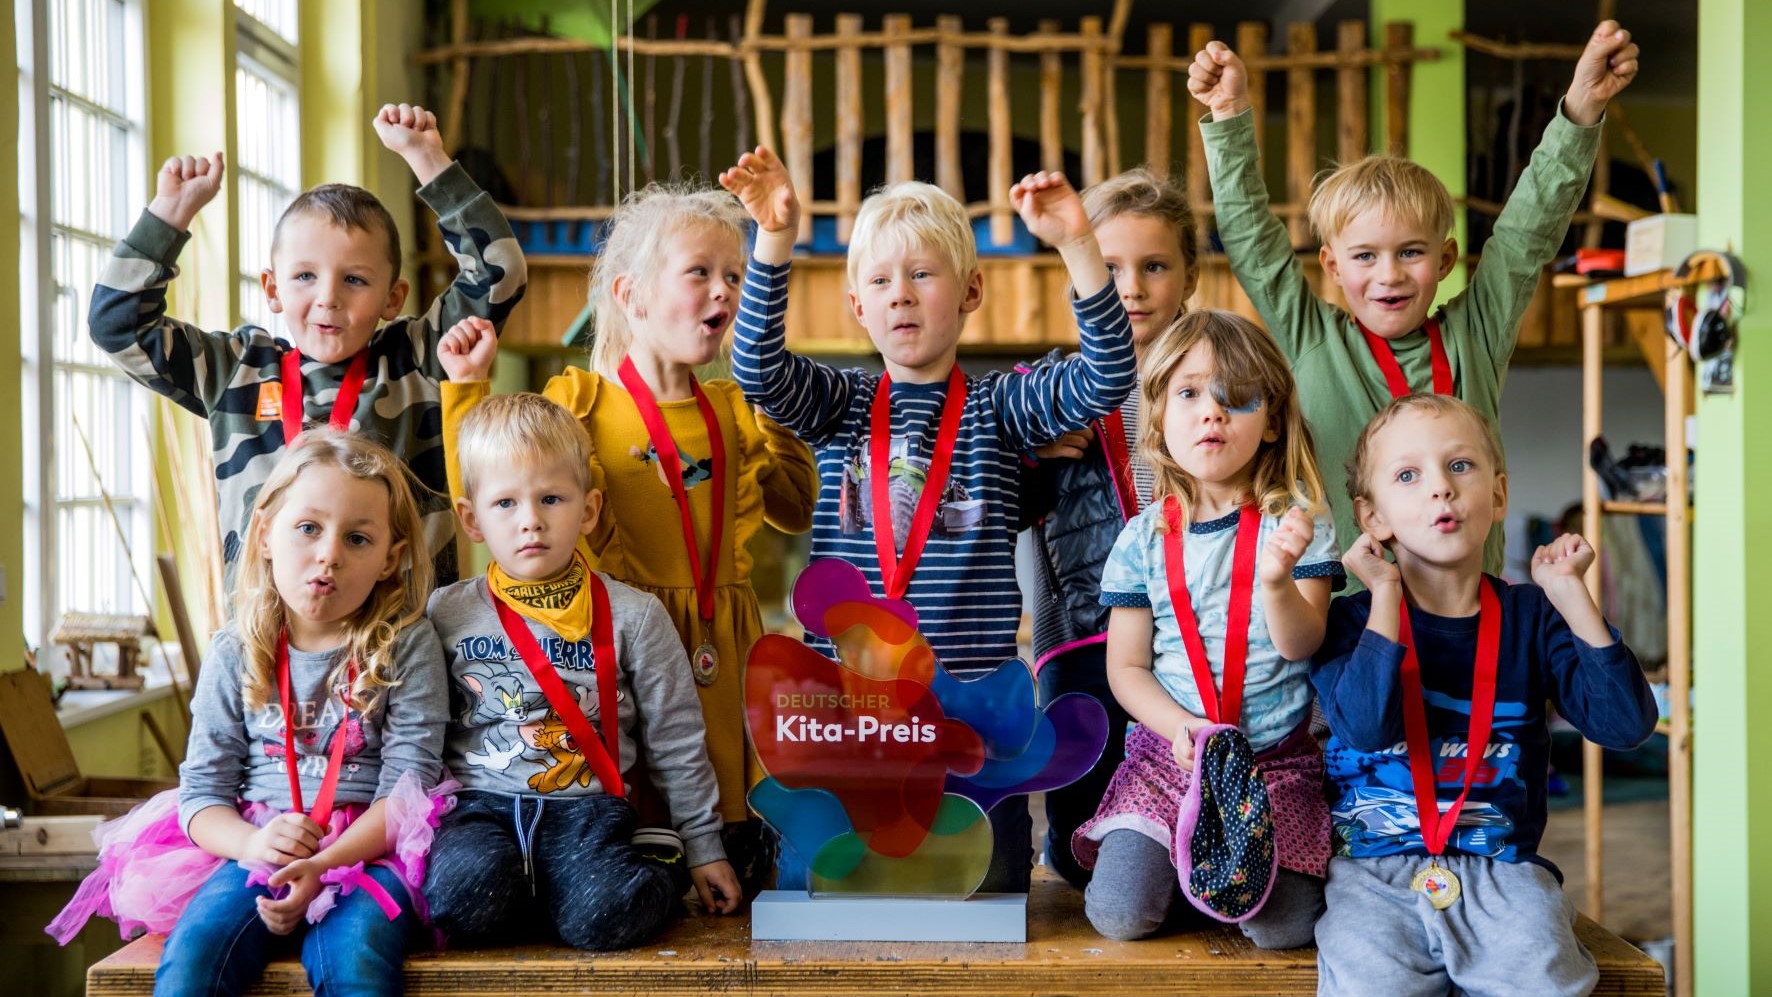 Kinder jubeln neben der Trophäe des Deutschen Kita-Preises